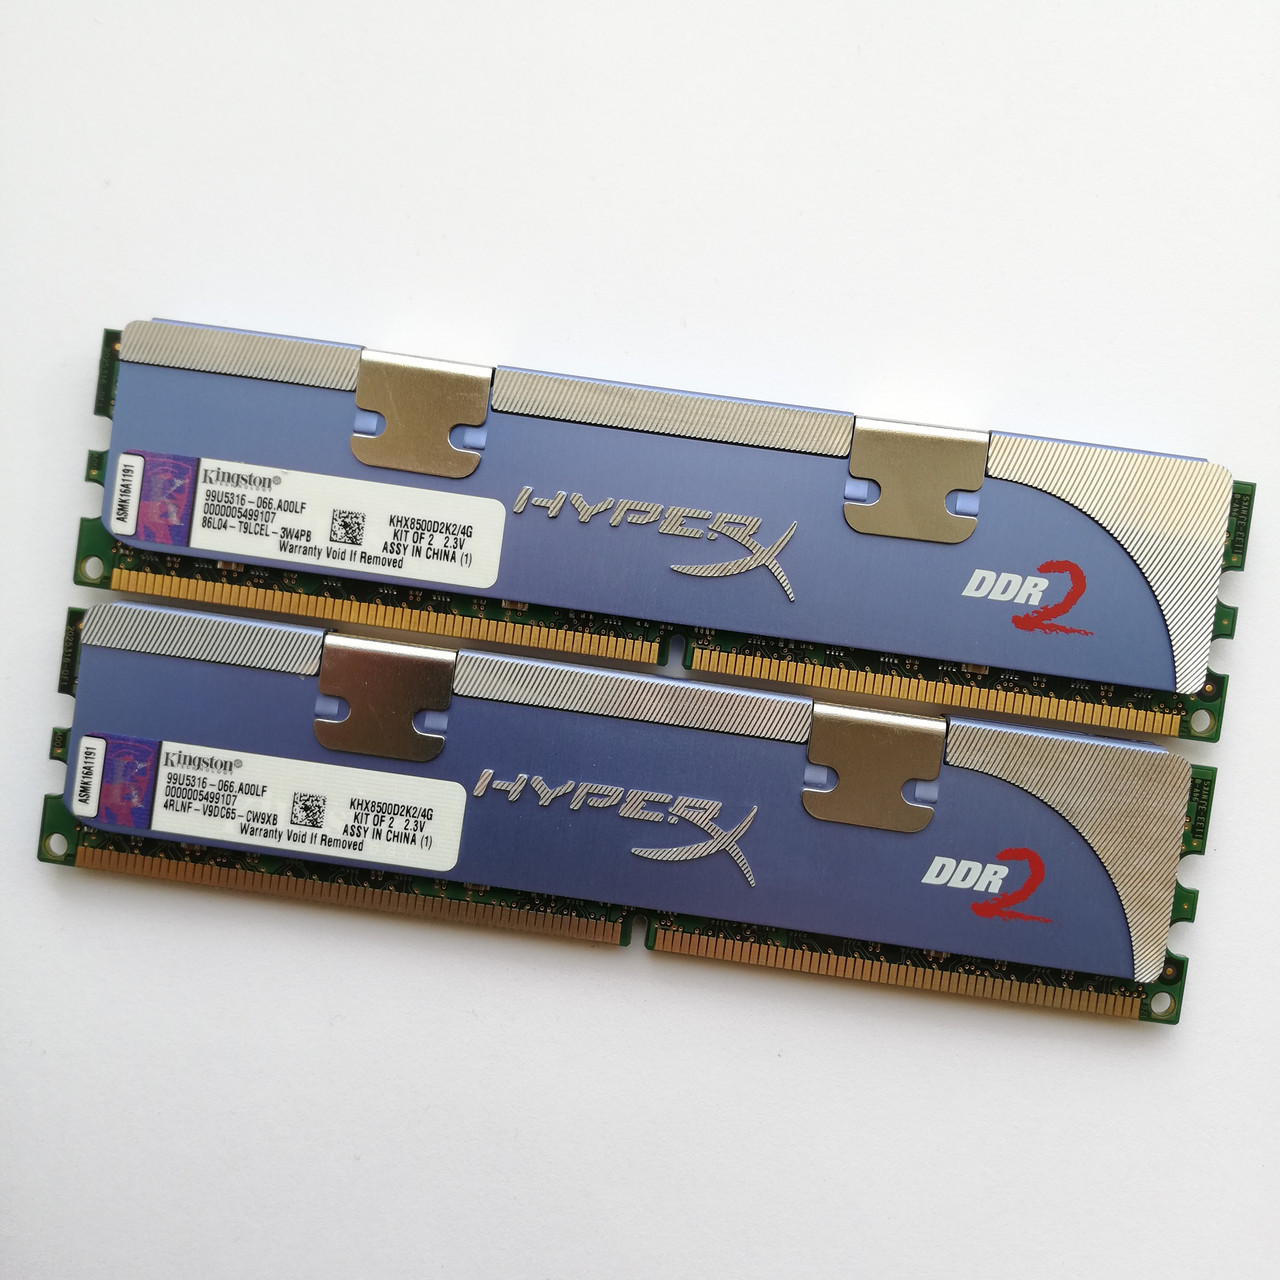 Ігрова оперативна пам'ять Kingston HyperX DDR2 4Gb (2Gb+2Gb) 1066MHz 8500U CL5 (KHX8500D2K2/4G) Б/В, фото 1